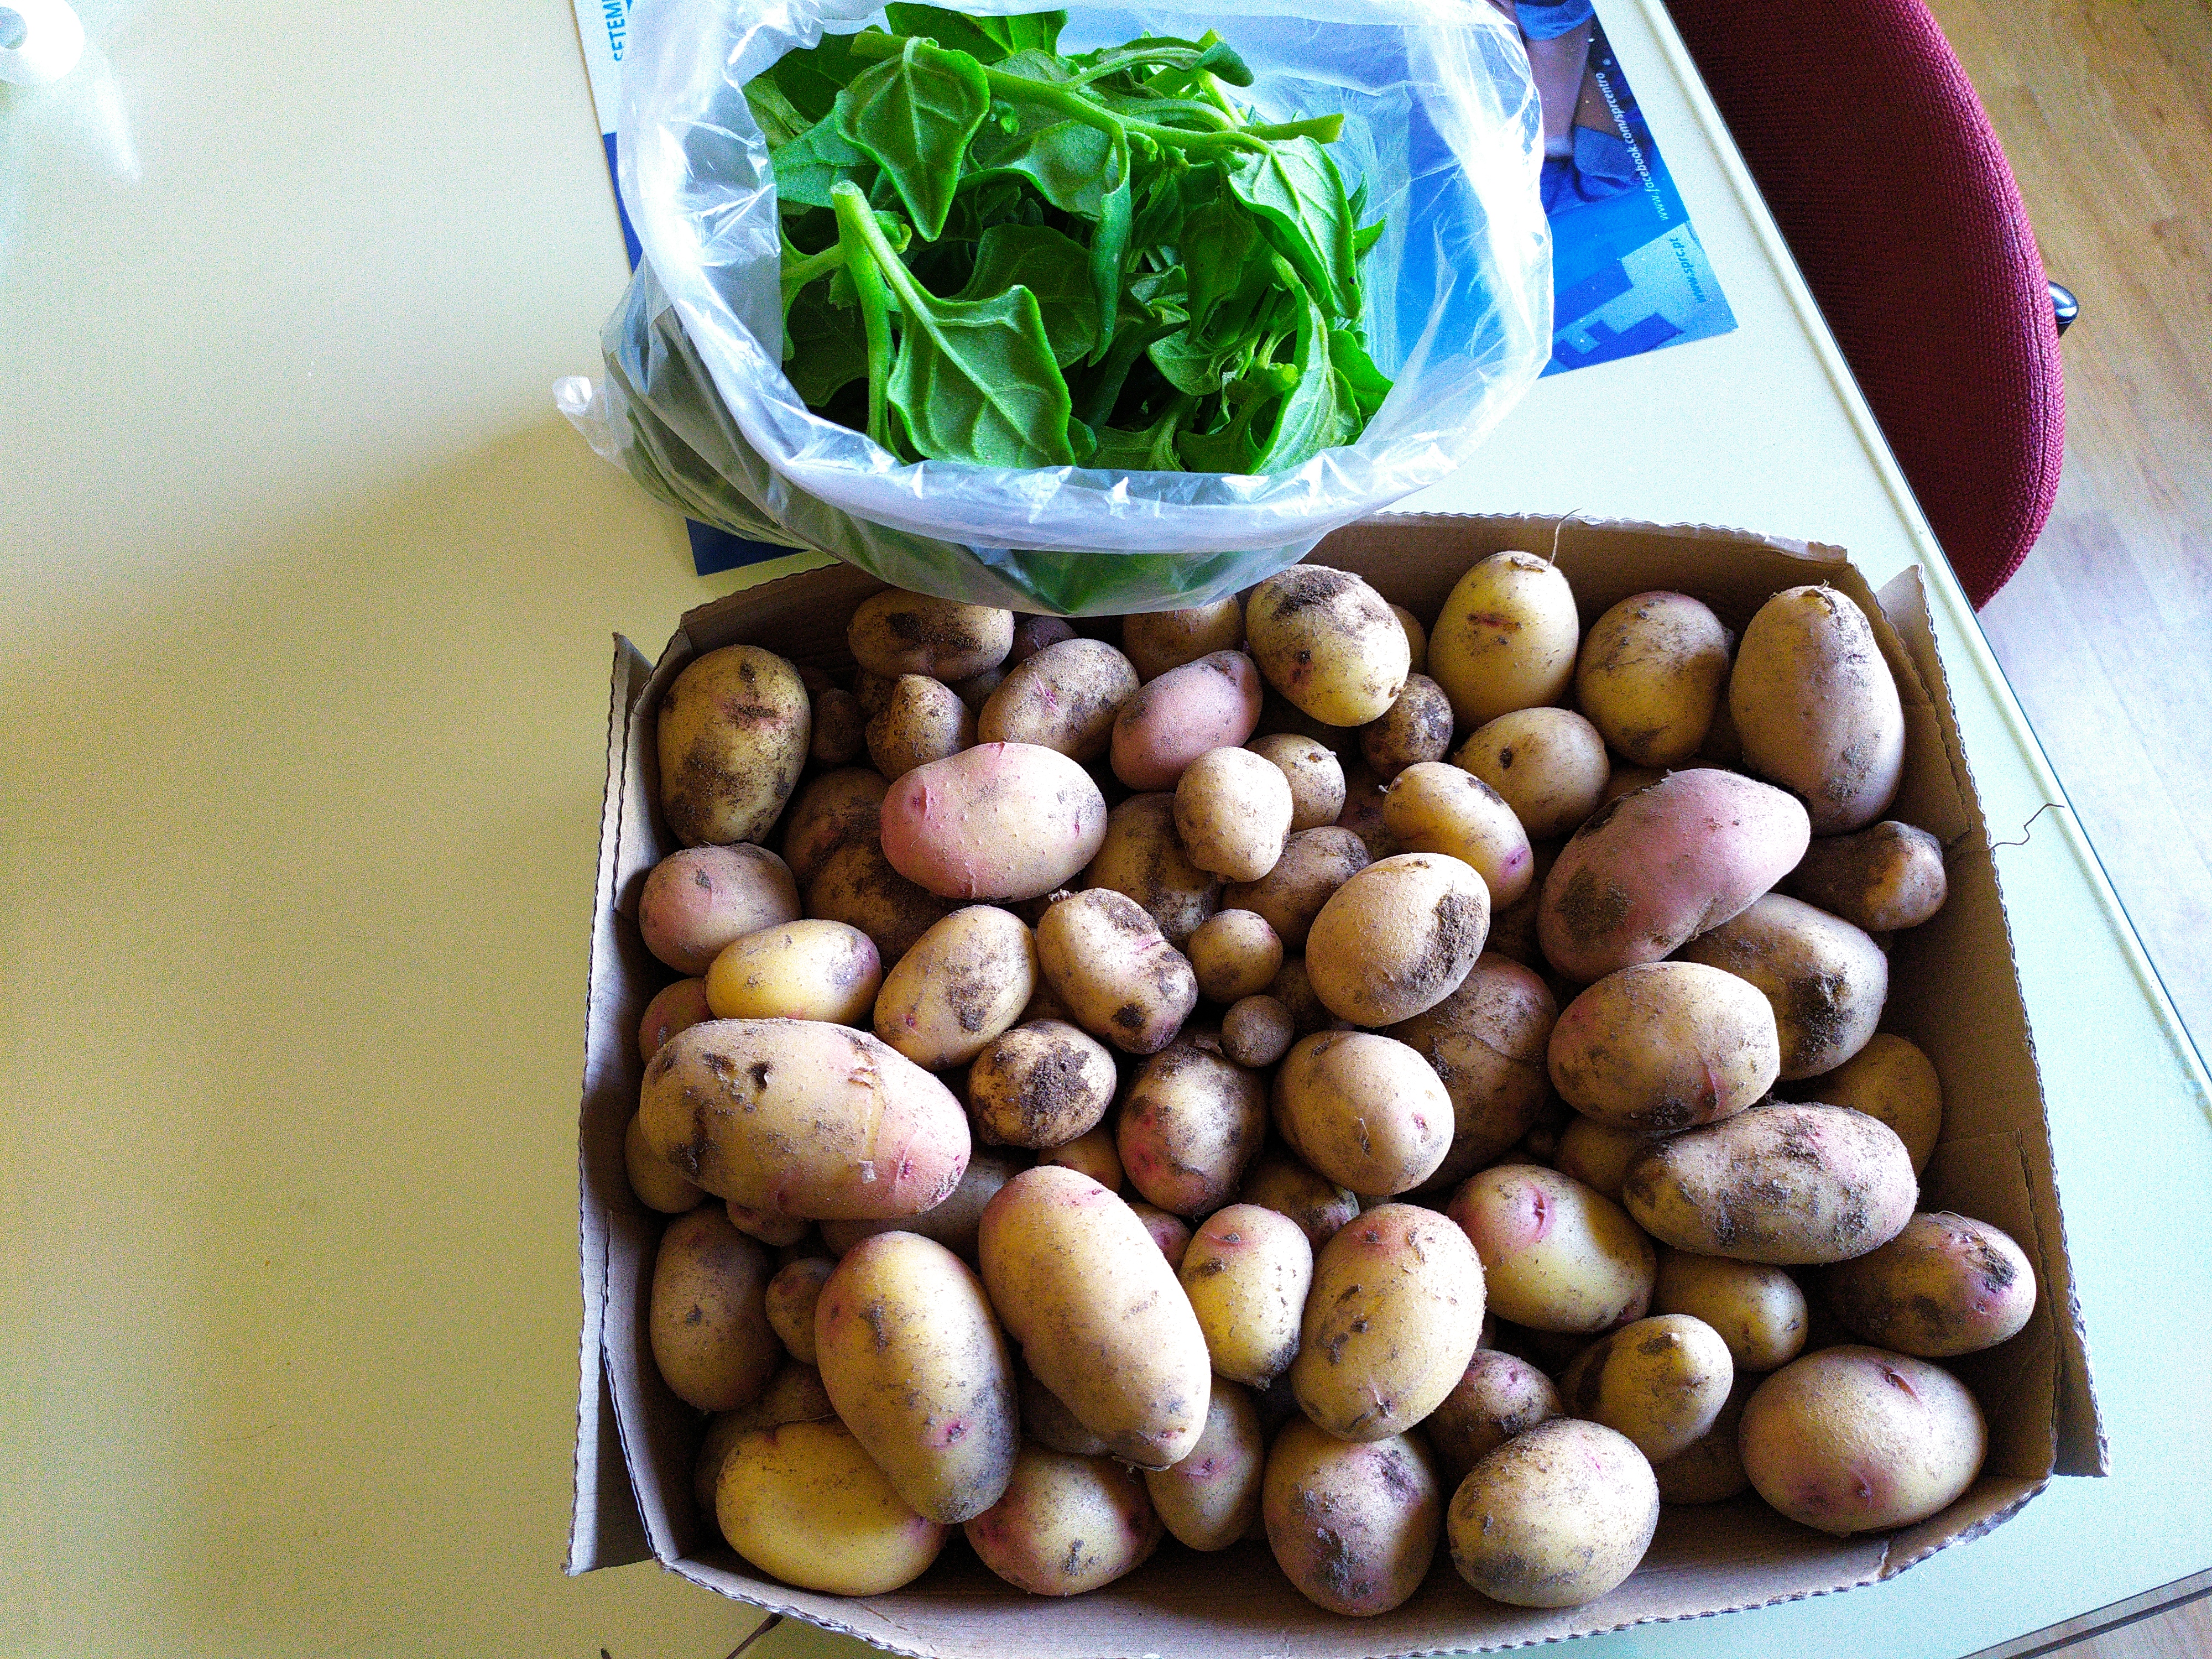 Batatas e espinafres colhidos na horta bio.